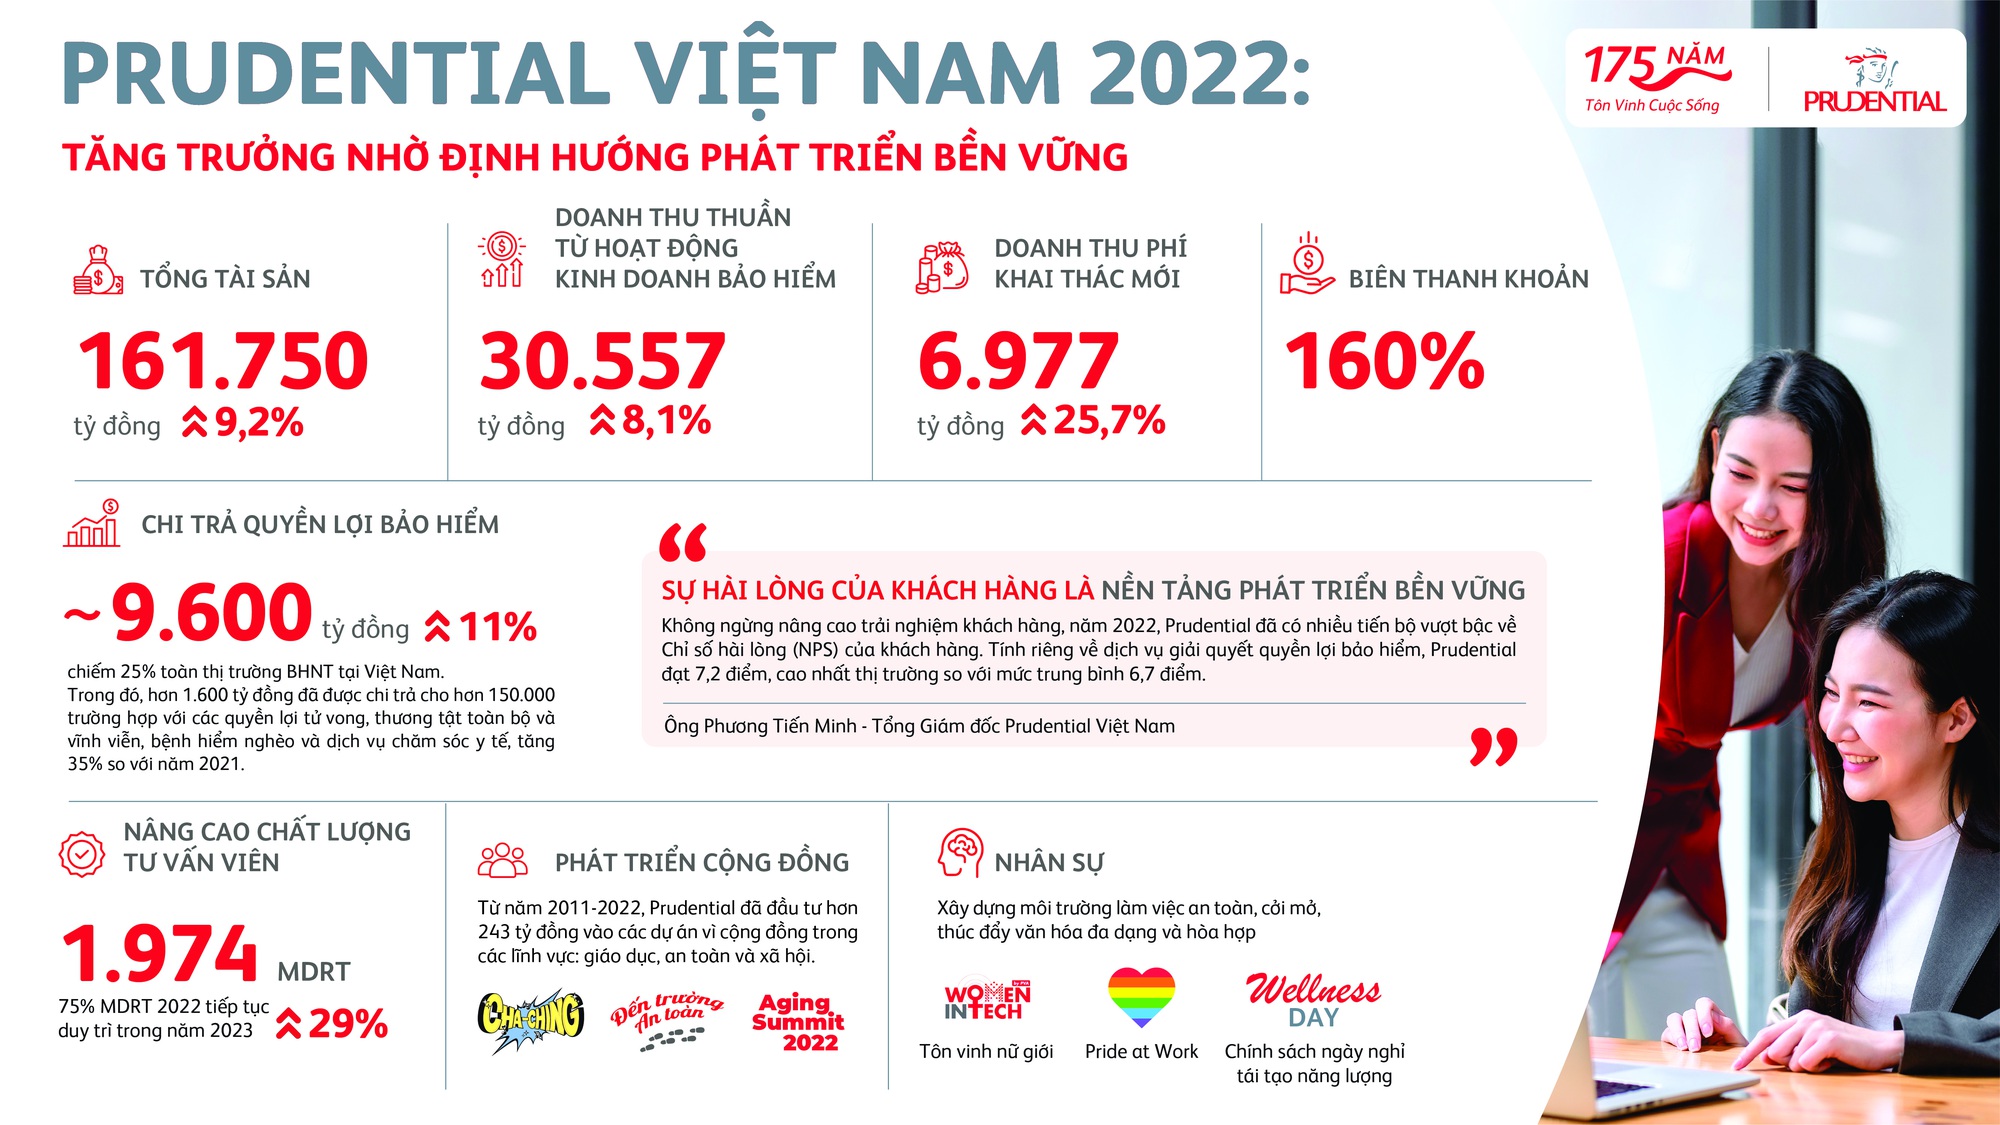 Prudential Việt Nam 2022 - tăng trưởng nhờ định hướng phát triển bền vững - Ảnh 1.